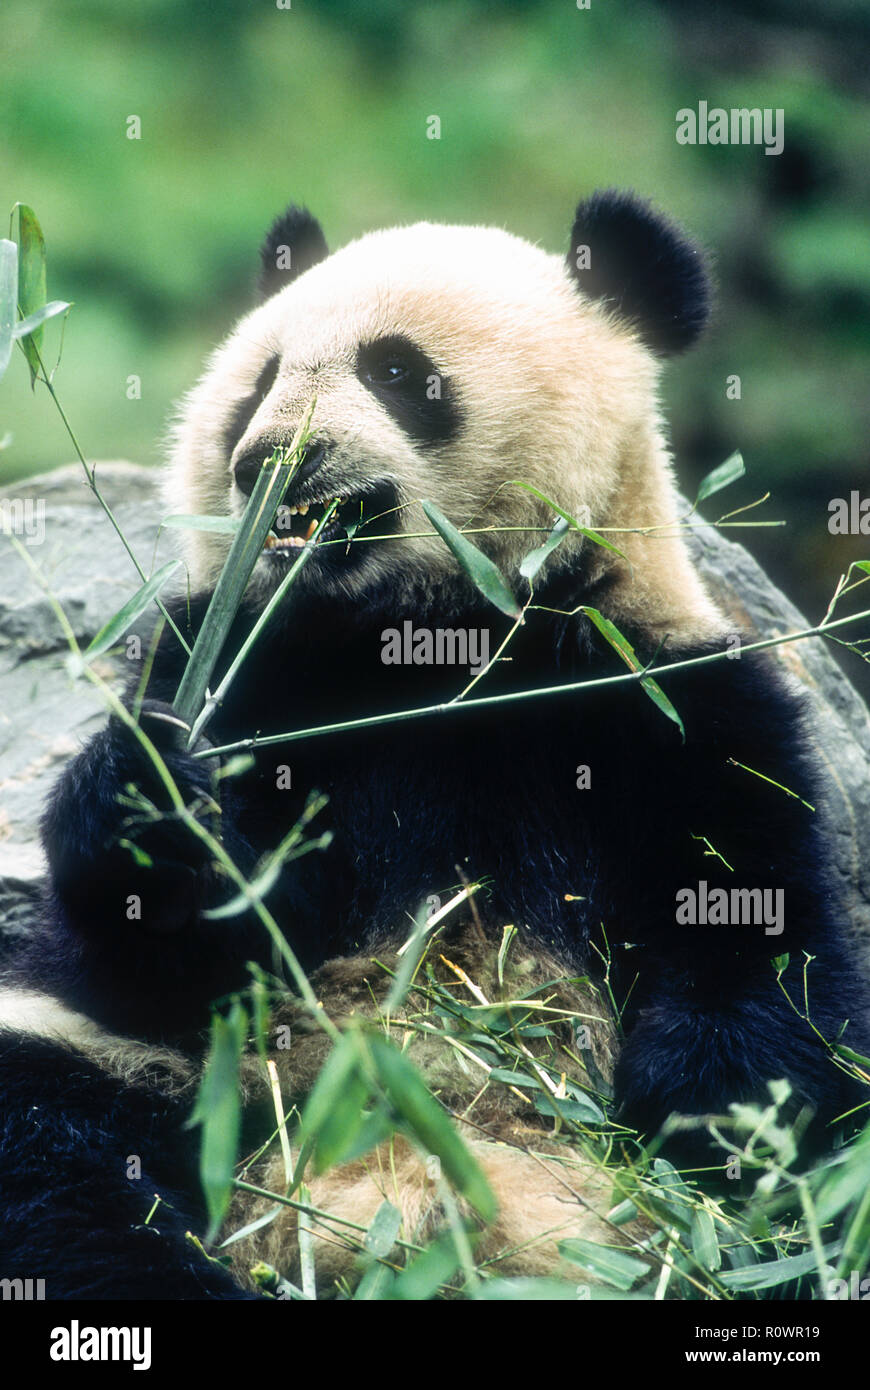 Asie, Chine, province du Sichuan Wolong ; ; ; réserve Wolong Chine Panda la faune ; mammifères ; les ours, le Panda Géant, espèce en voie de disparition ; manger le bambou. Banque D'Images